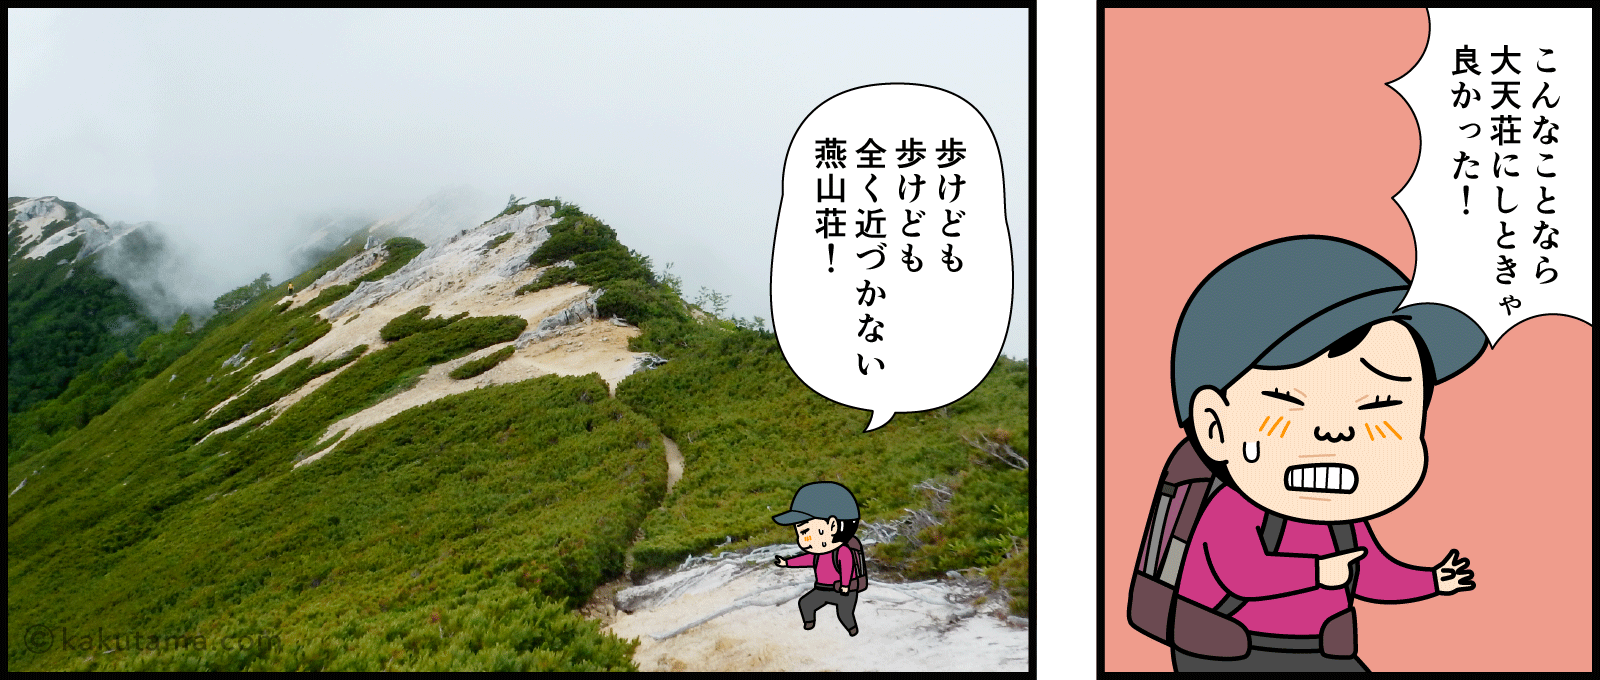 燕岳と常念岳の分岐点でどちらへ行くか迷う漫画3